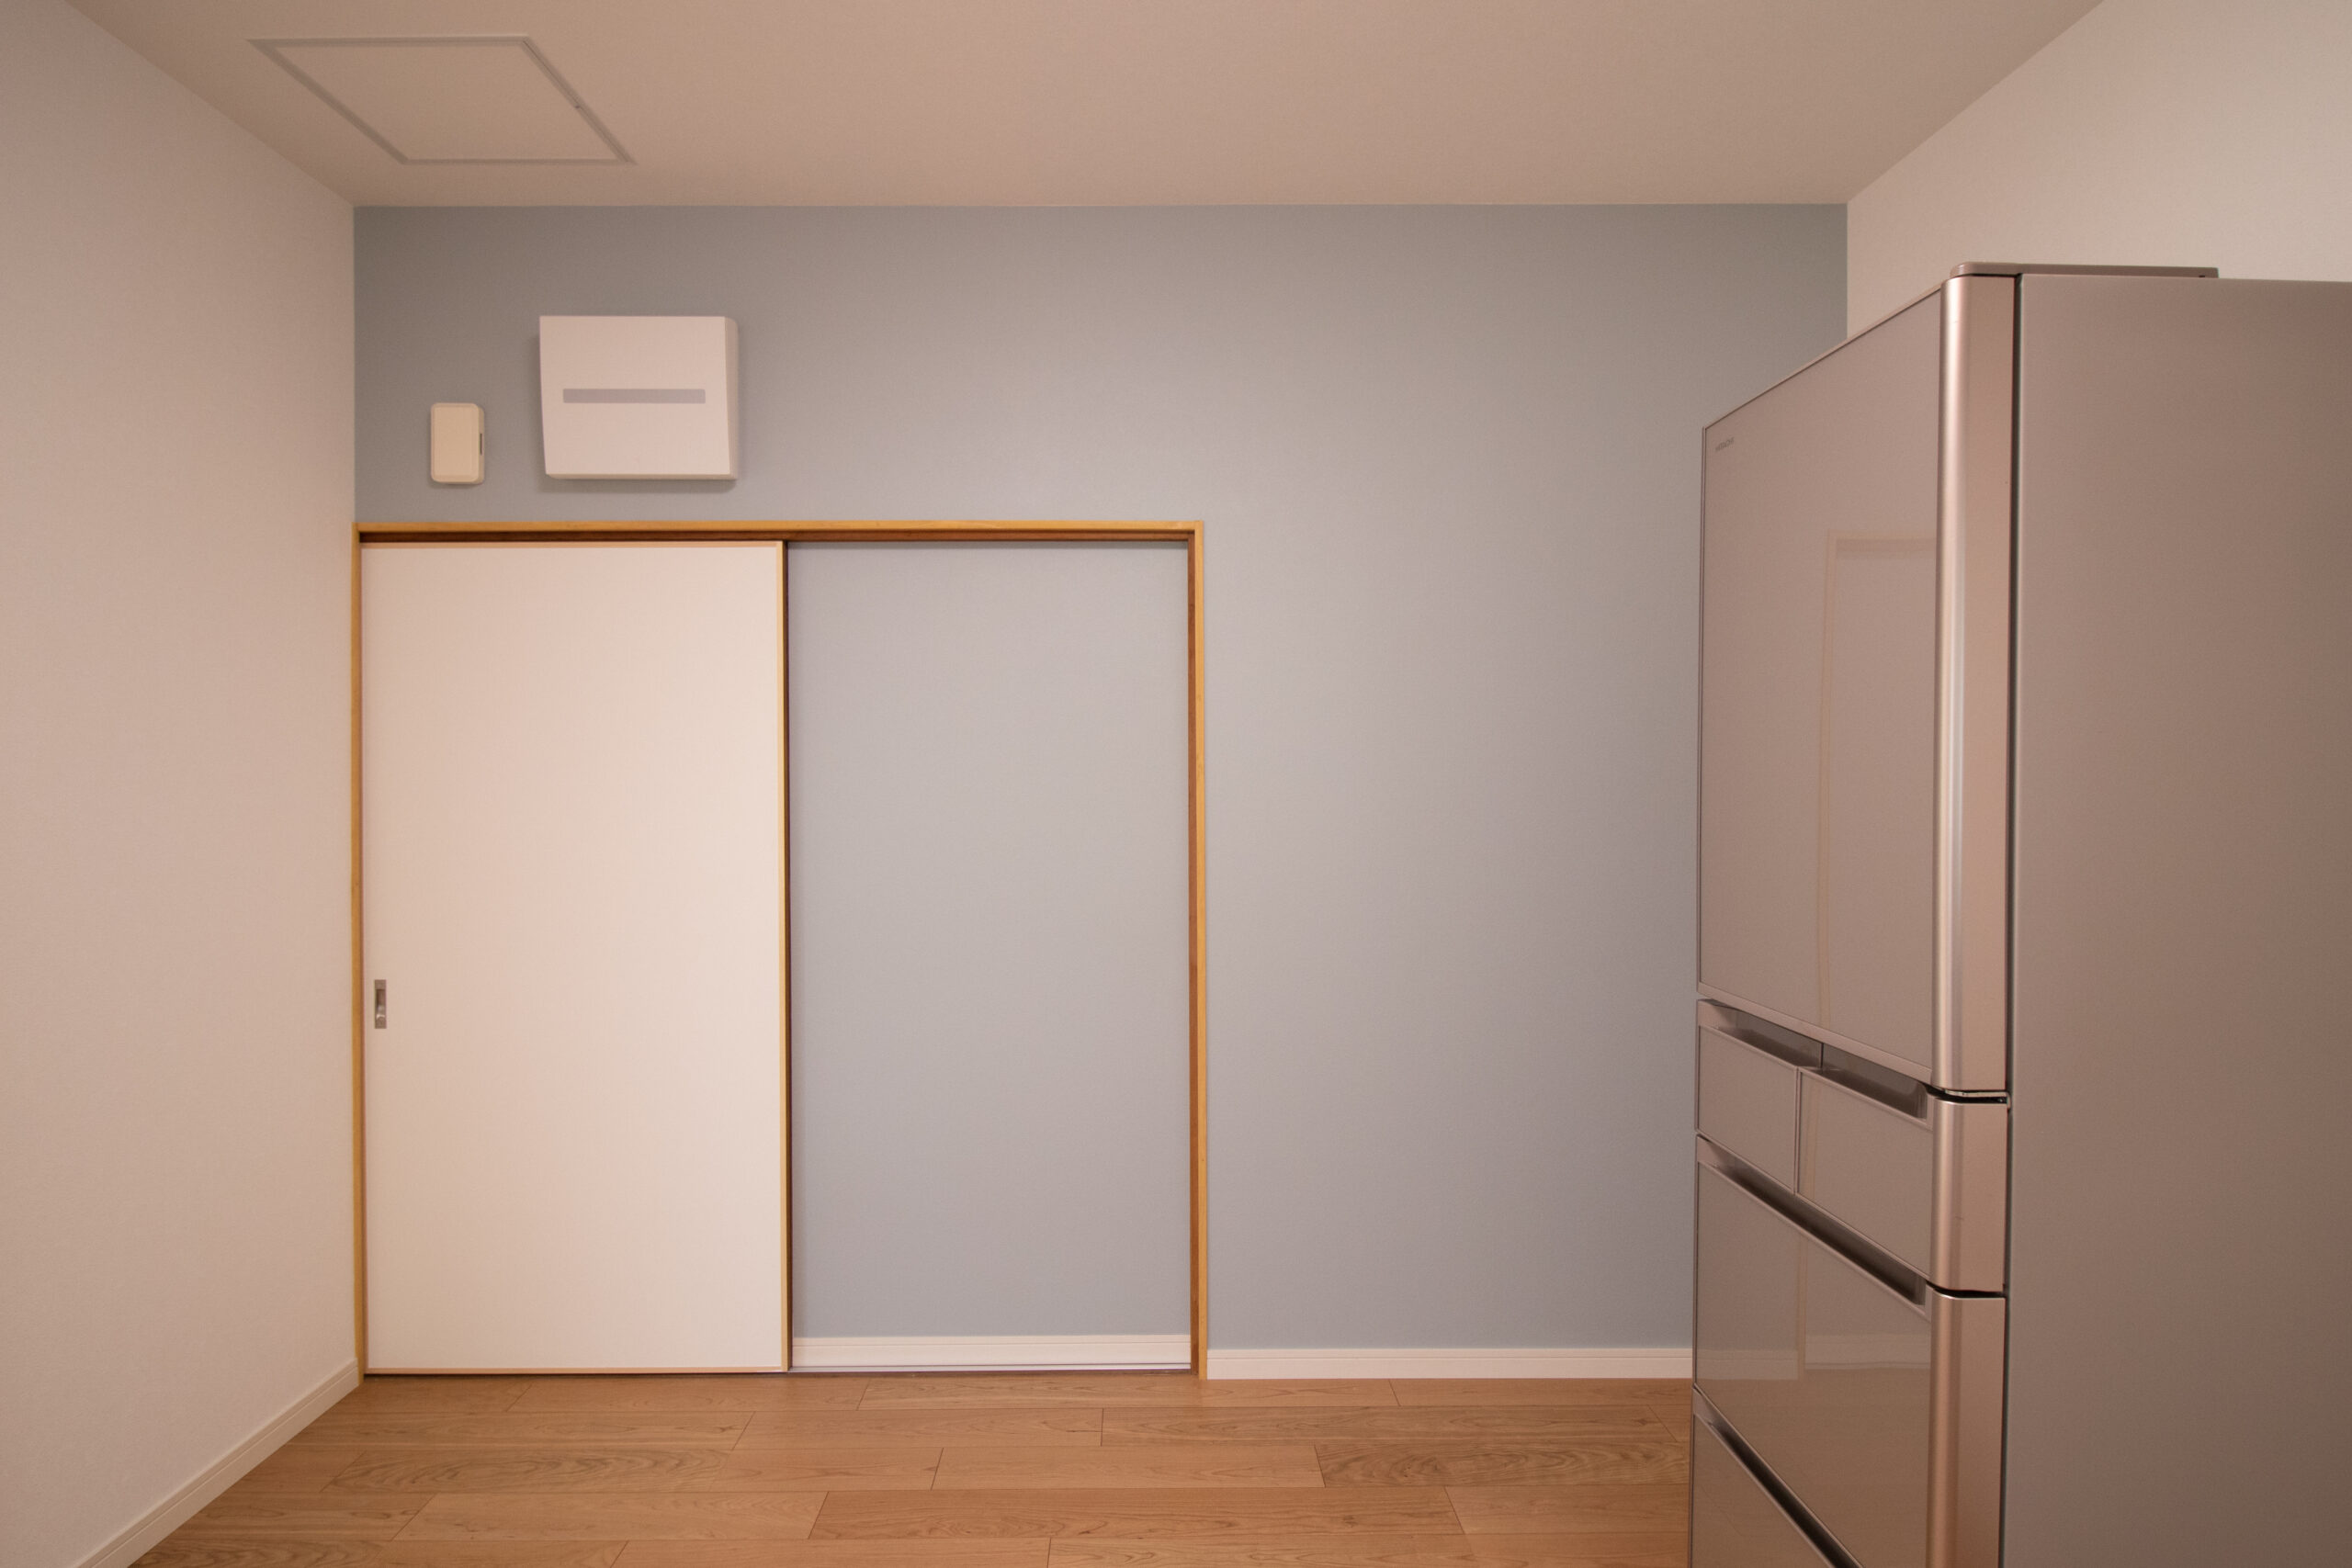 LIXILのI型キッチン『アレスタ』とサンゲツの機能性壁紙『リザーブ』で、シンプルな暮らしを実現！／佐賀市本庄 戸建